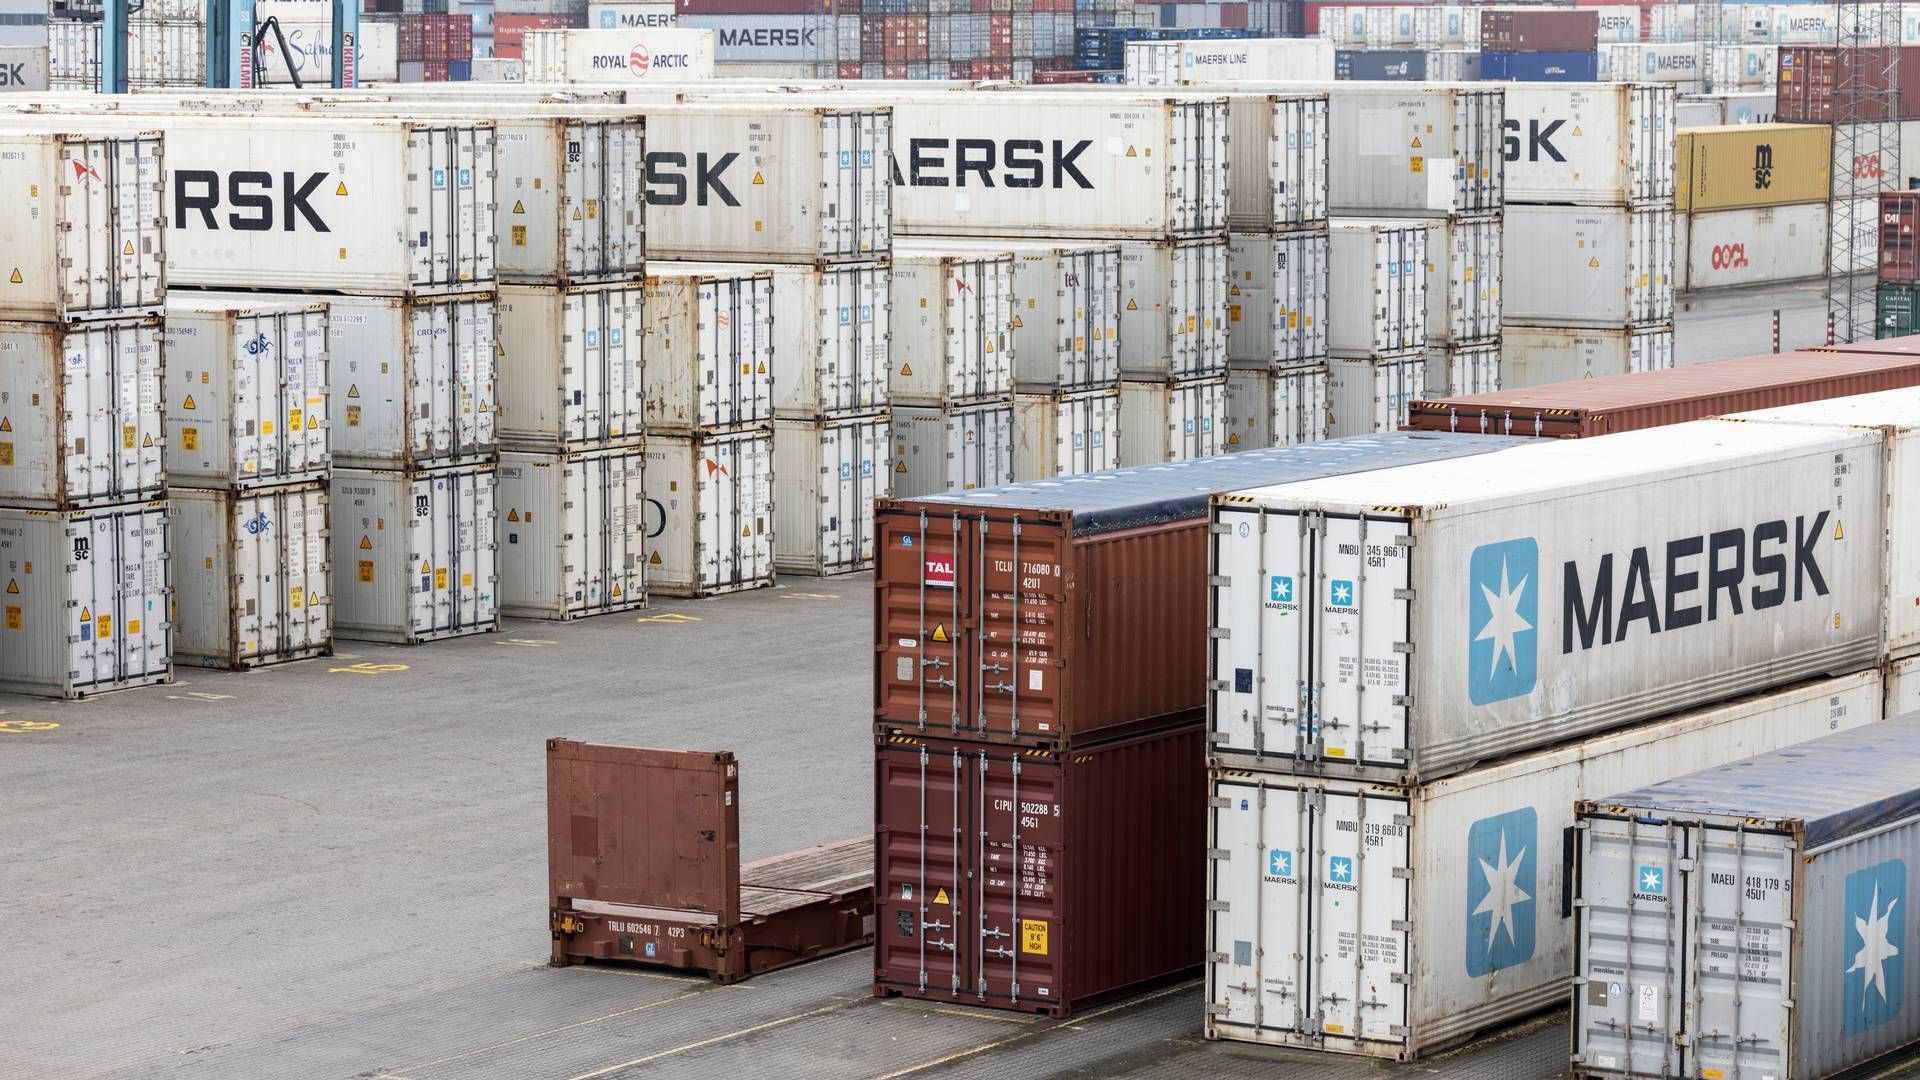 Efter måneders medieomtale af kriminelles aktiviteter på Aarhus Havn vil Mærsk nu styrke beskyttelsen af containerne i havnen. | Foto: Casper Dalhoff/Ritzau Scanpix